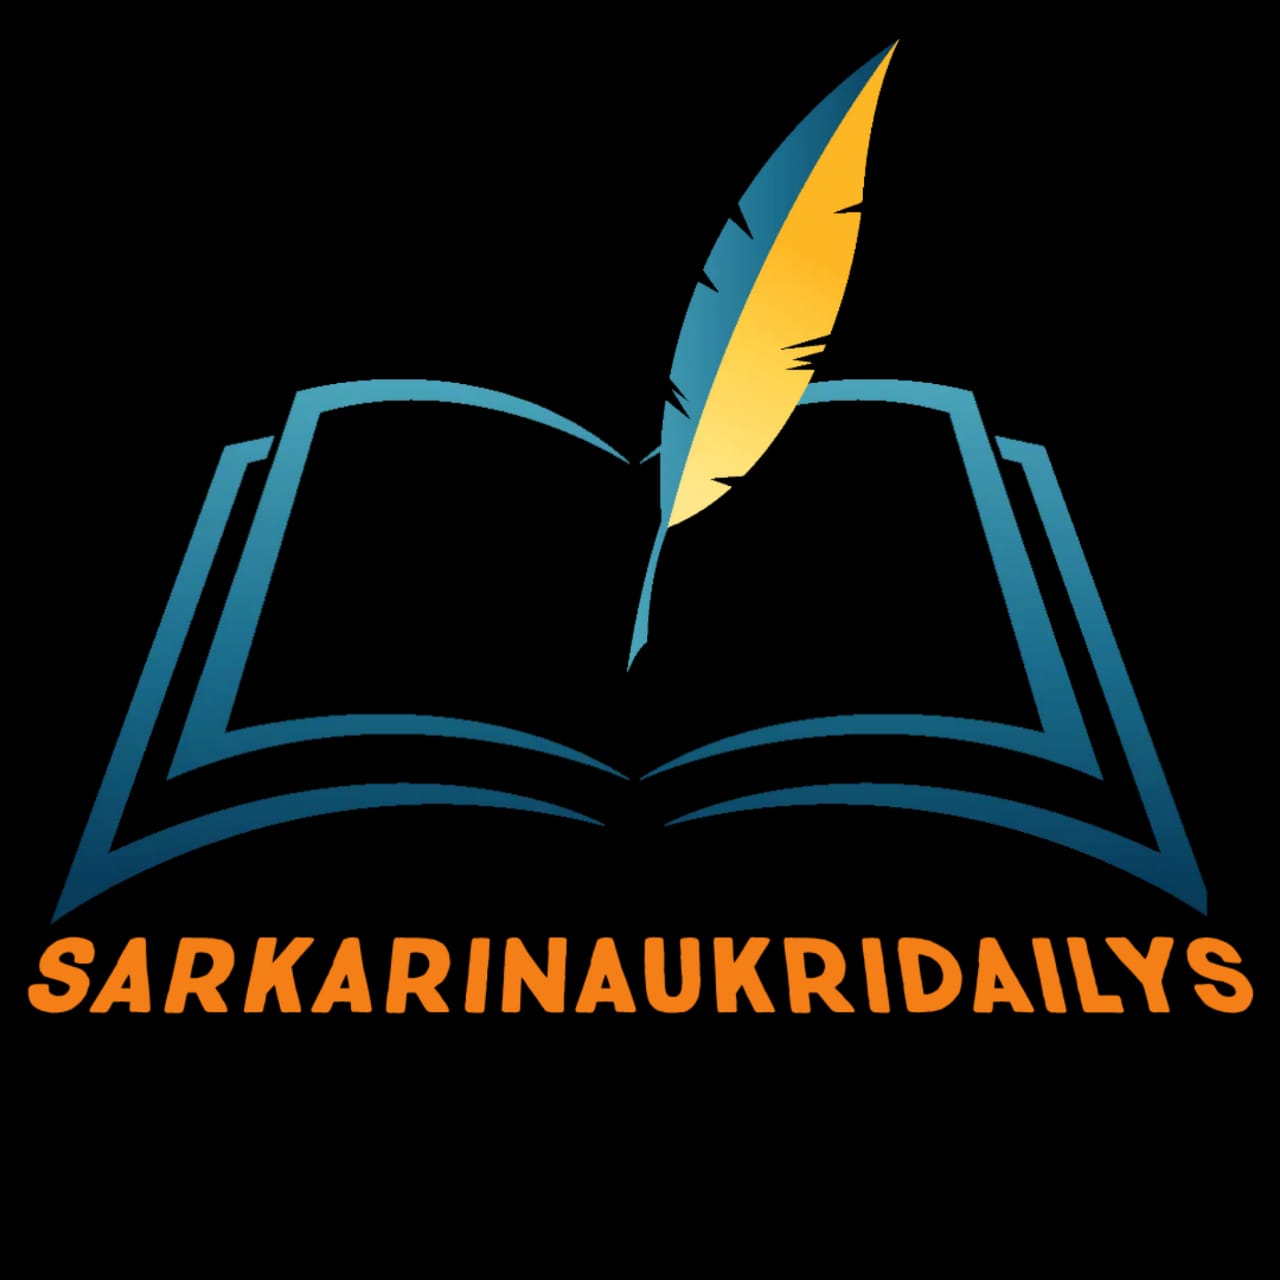 sarkarinaukridailys : Sarkari Results, Latest Online Form |Result 2020